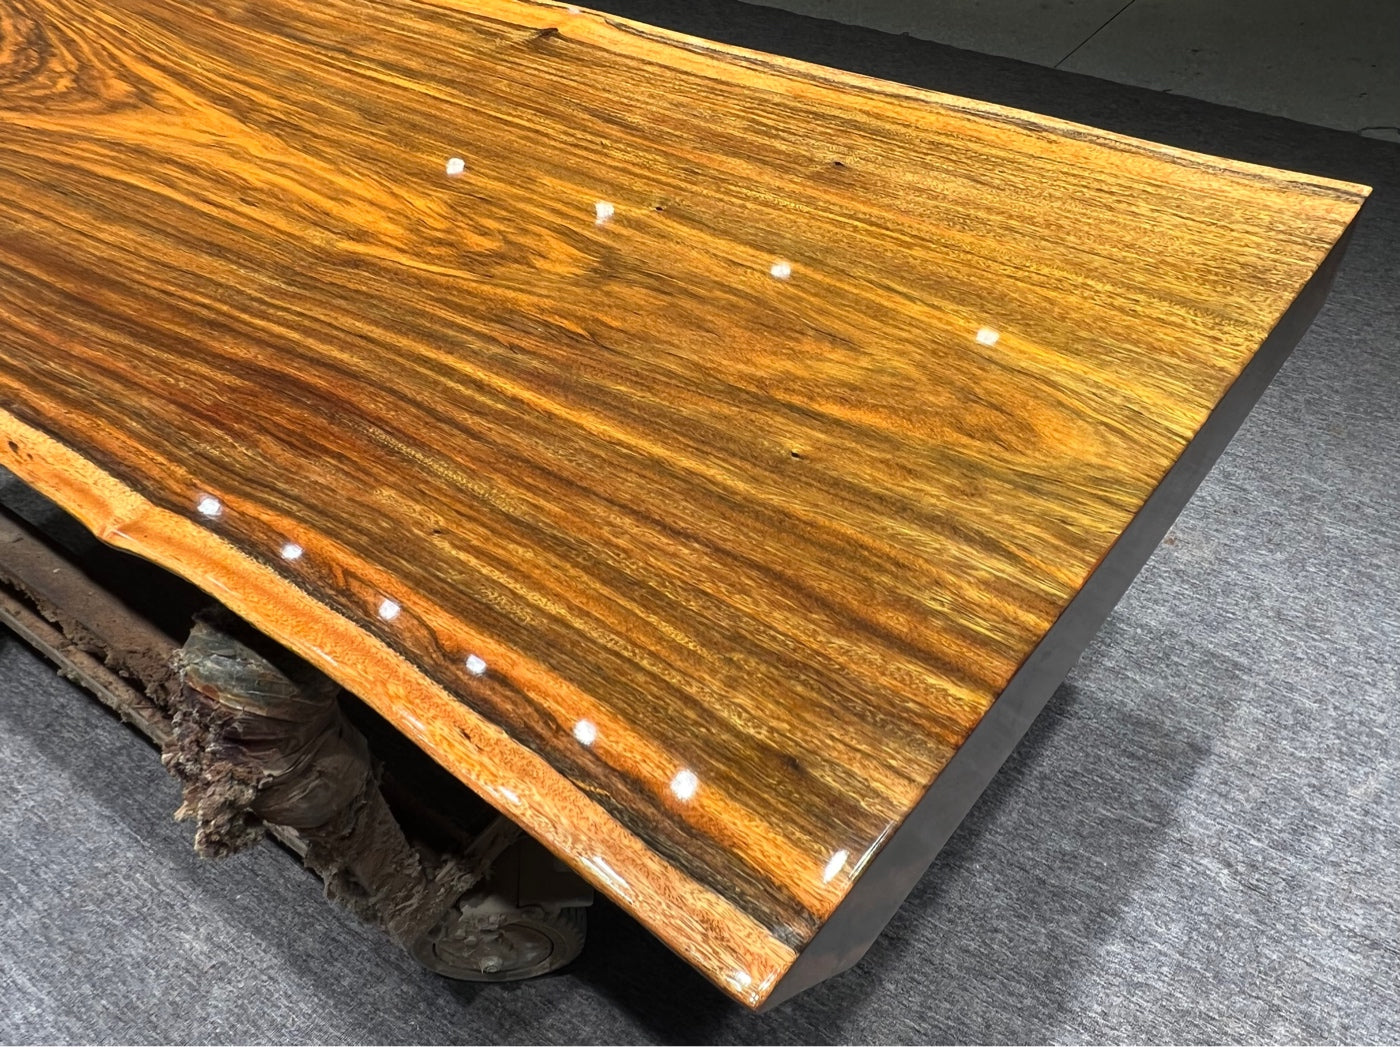 Tali wood wood slab table, Africa wood slab table round, slab table c channel